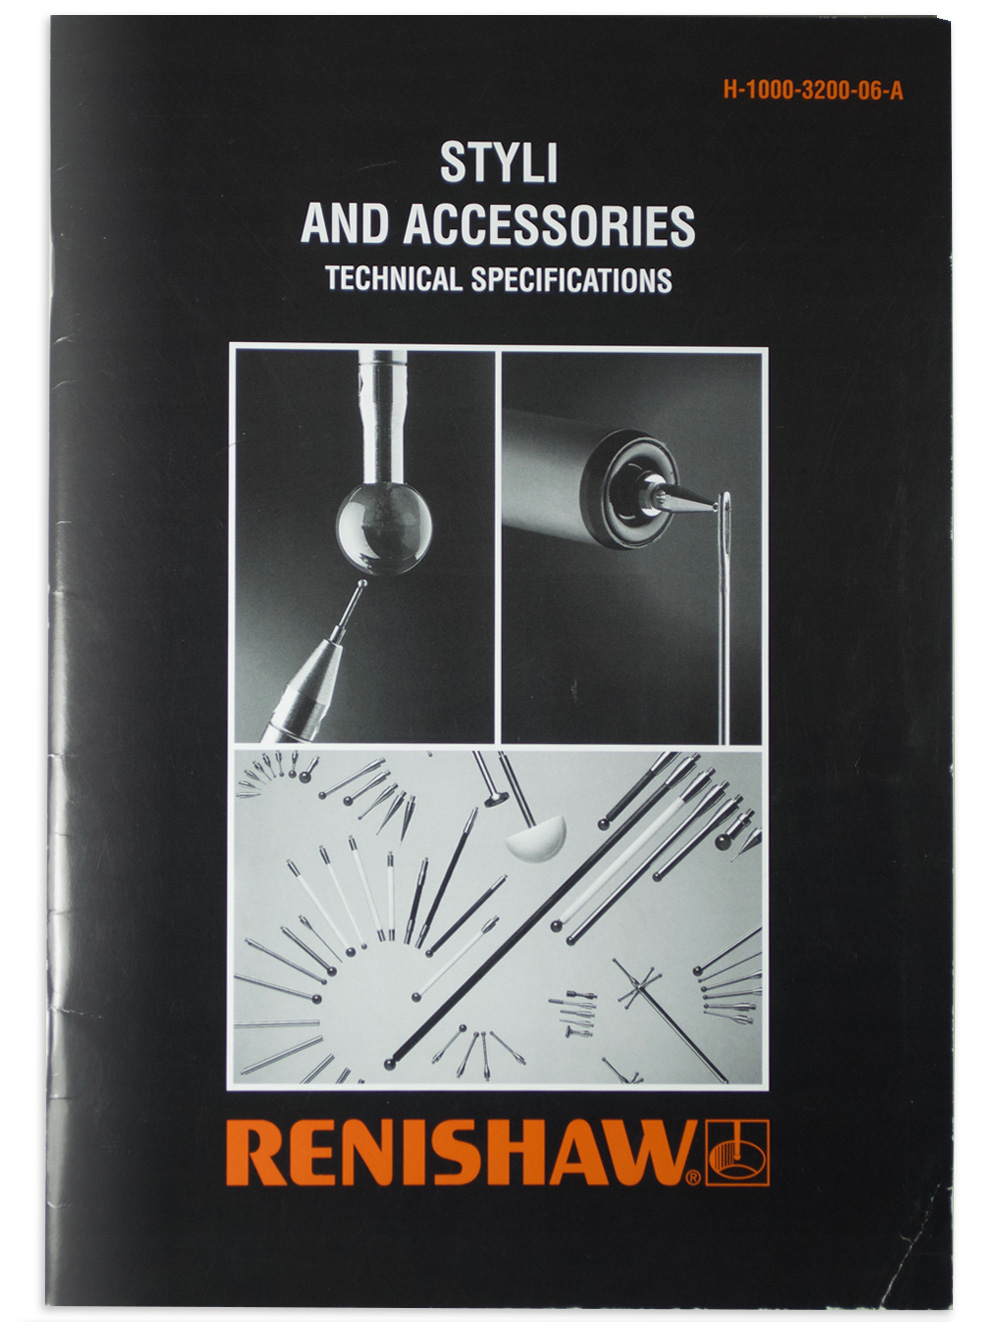 Old Renishaw styli catalogue